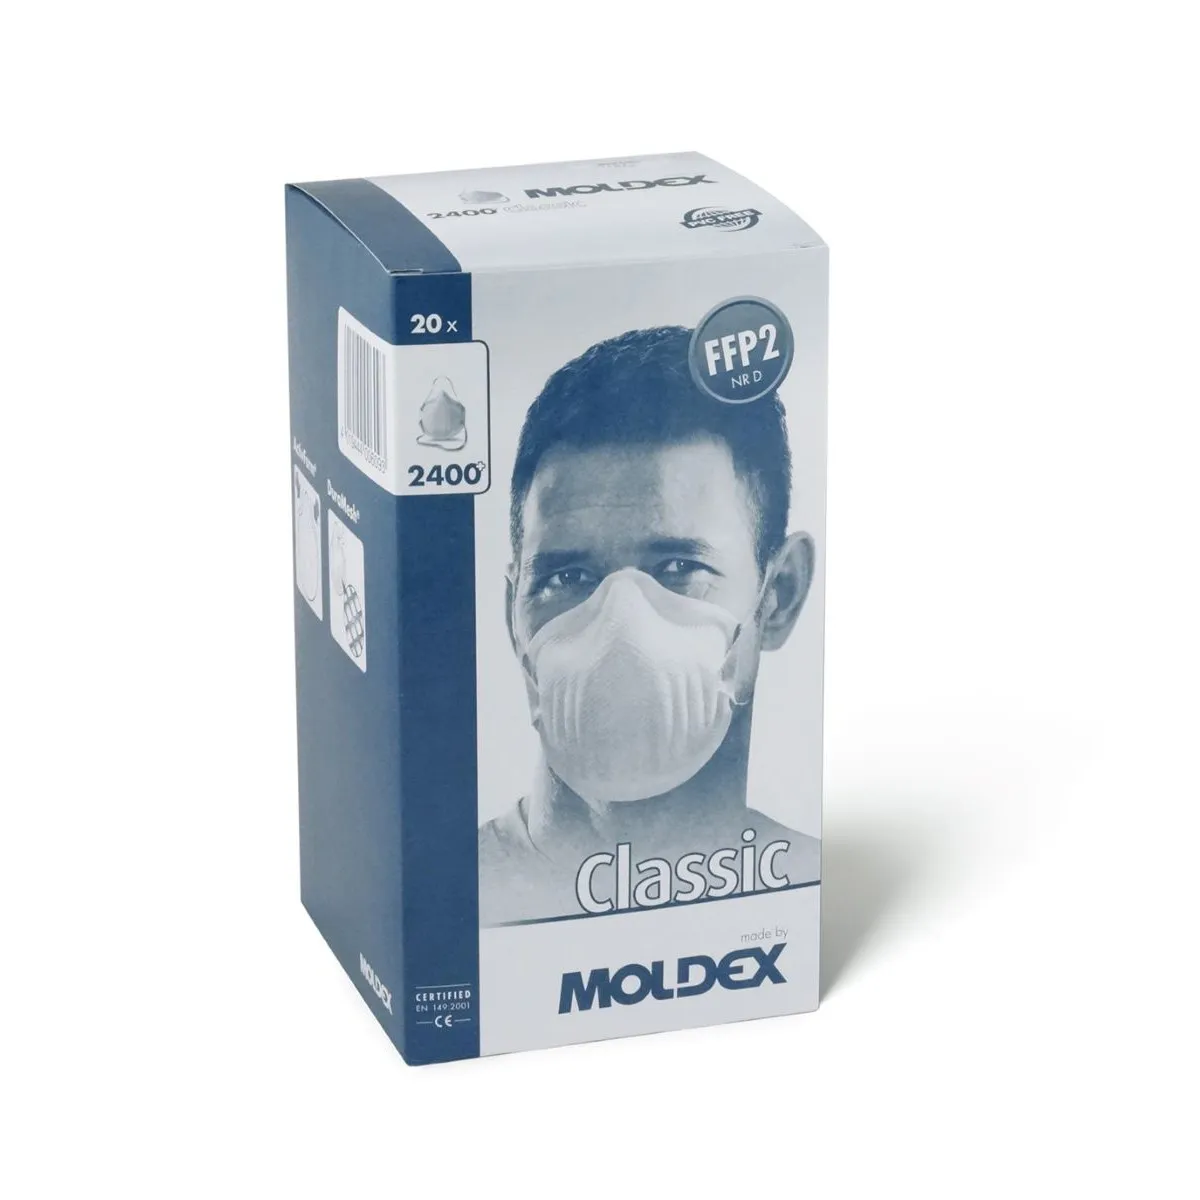 Jednokratna maska FFP2 2400 - Moldex 